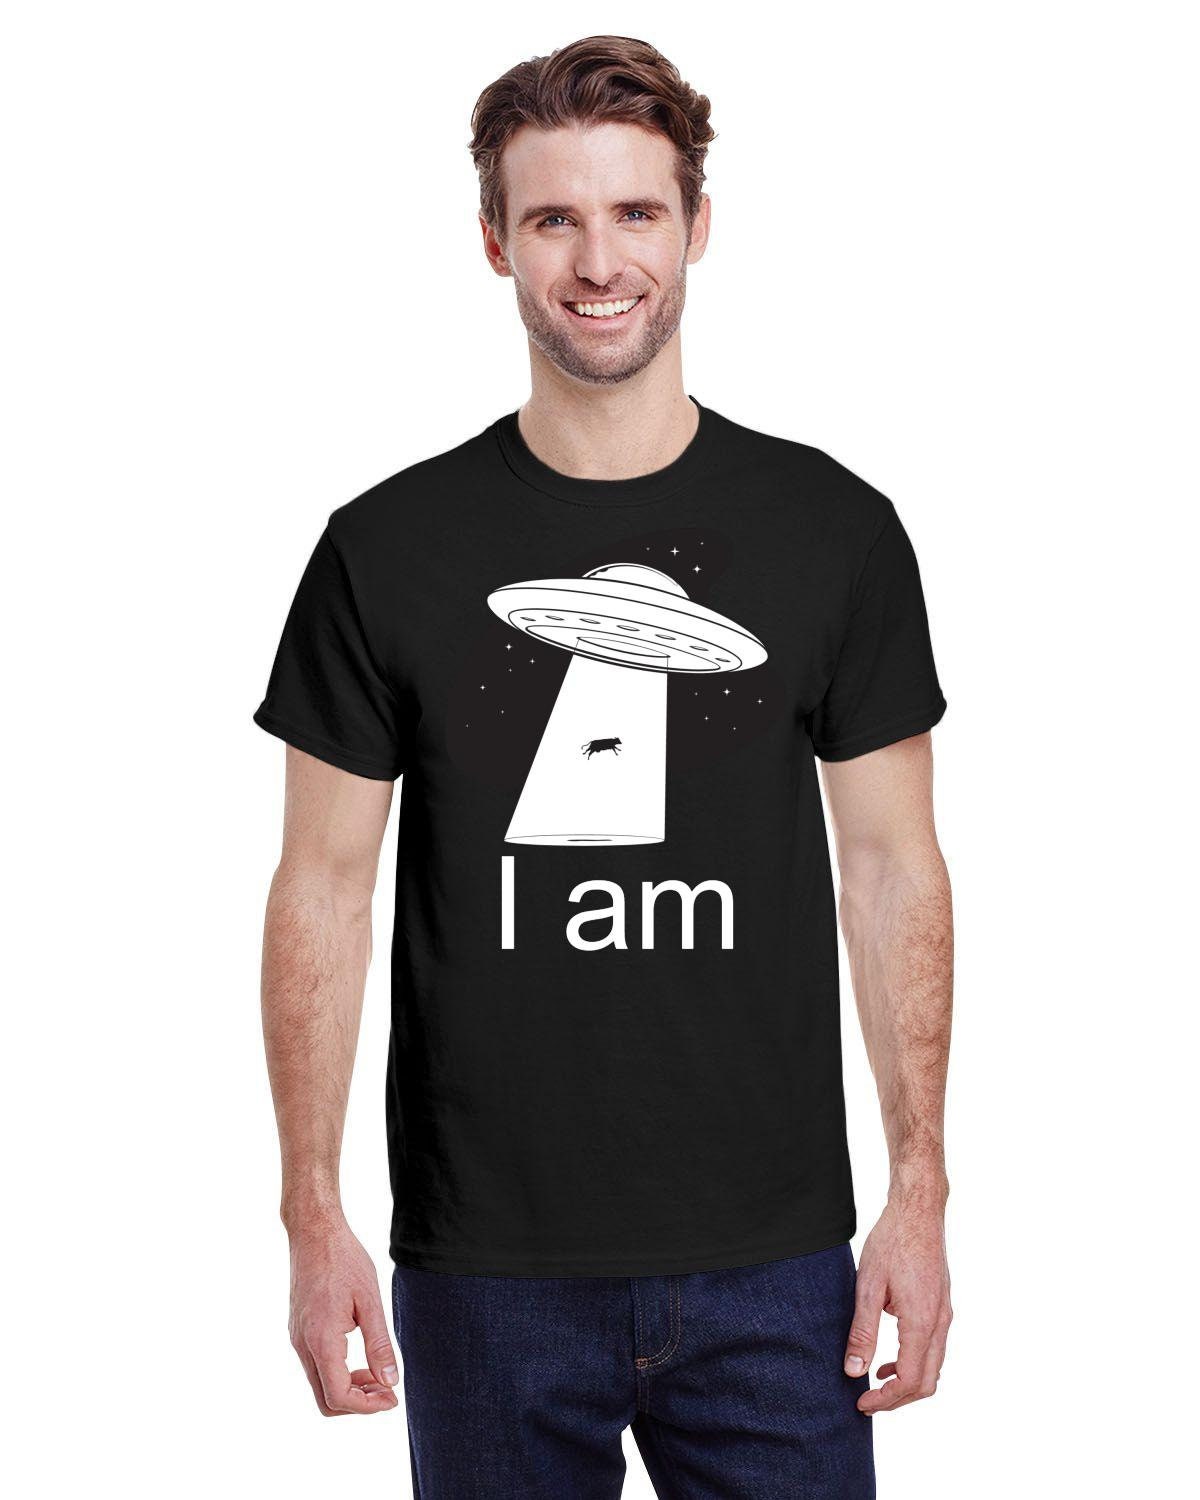 Πουκάμισο UFO, Πουκάμισο απαγωγής εξωγήινων, Πουκάμισο για το Outer Space, Lime Green Alien, Weird shirt, Space Tee, Flying Saucer T-Shirt Festival Alien T-Shirt - plusminusco.com